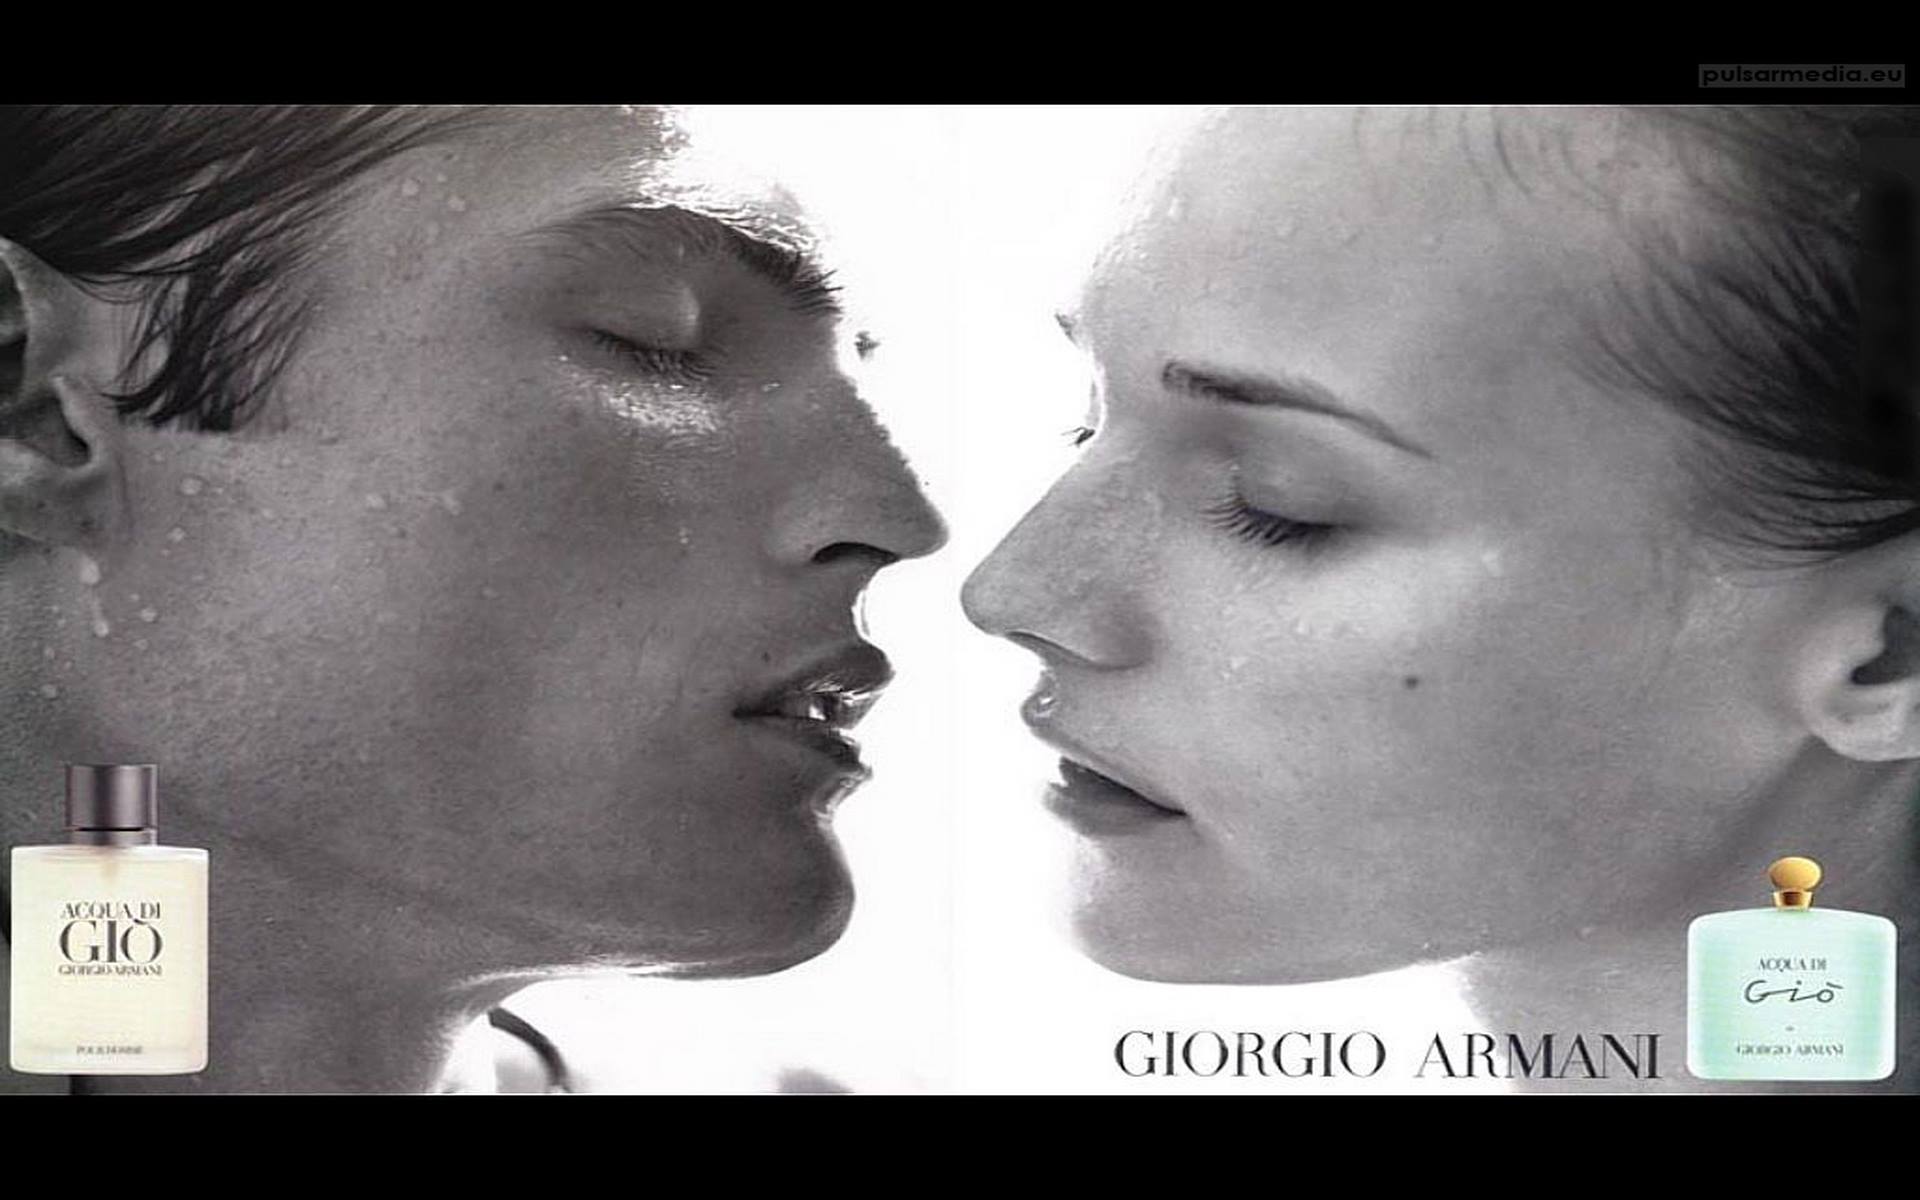 giorgio_armani_acqua_di_gio men and women model bay bayan model afiş reklam k.jpg